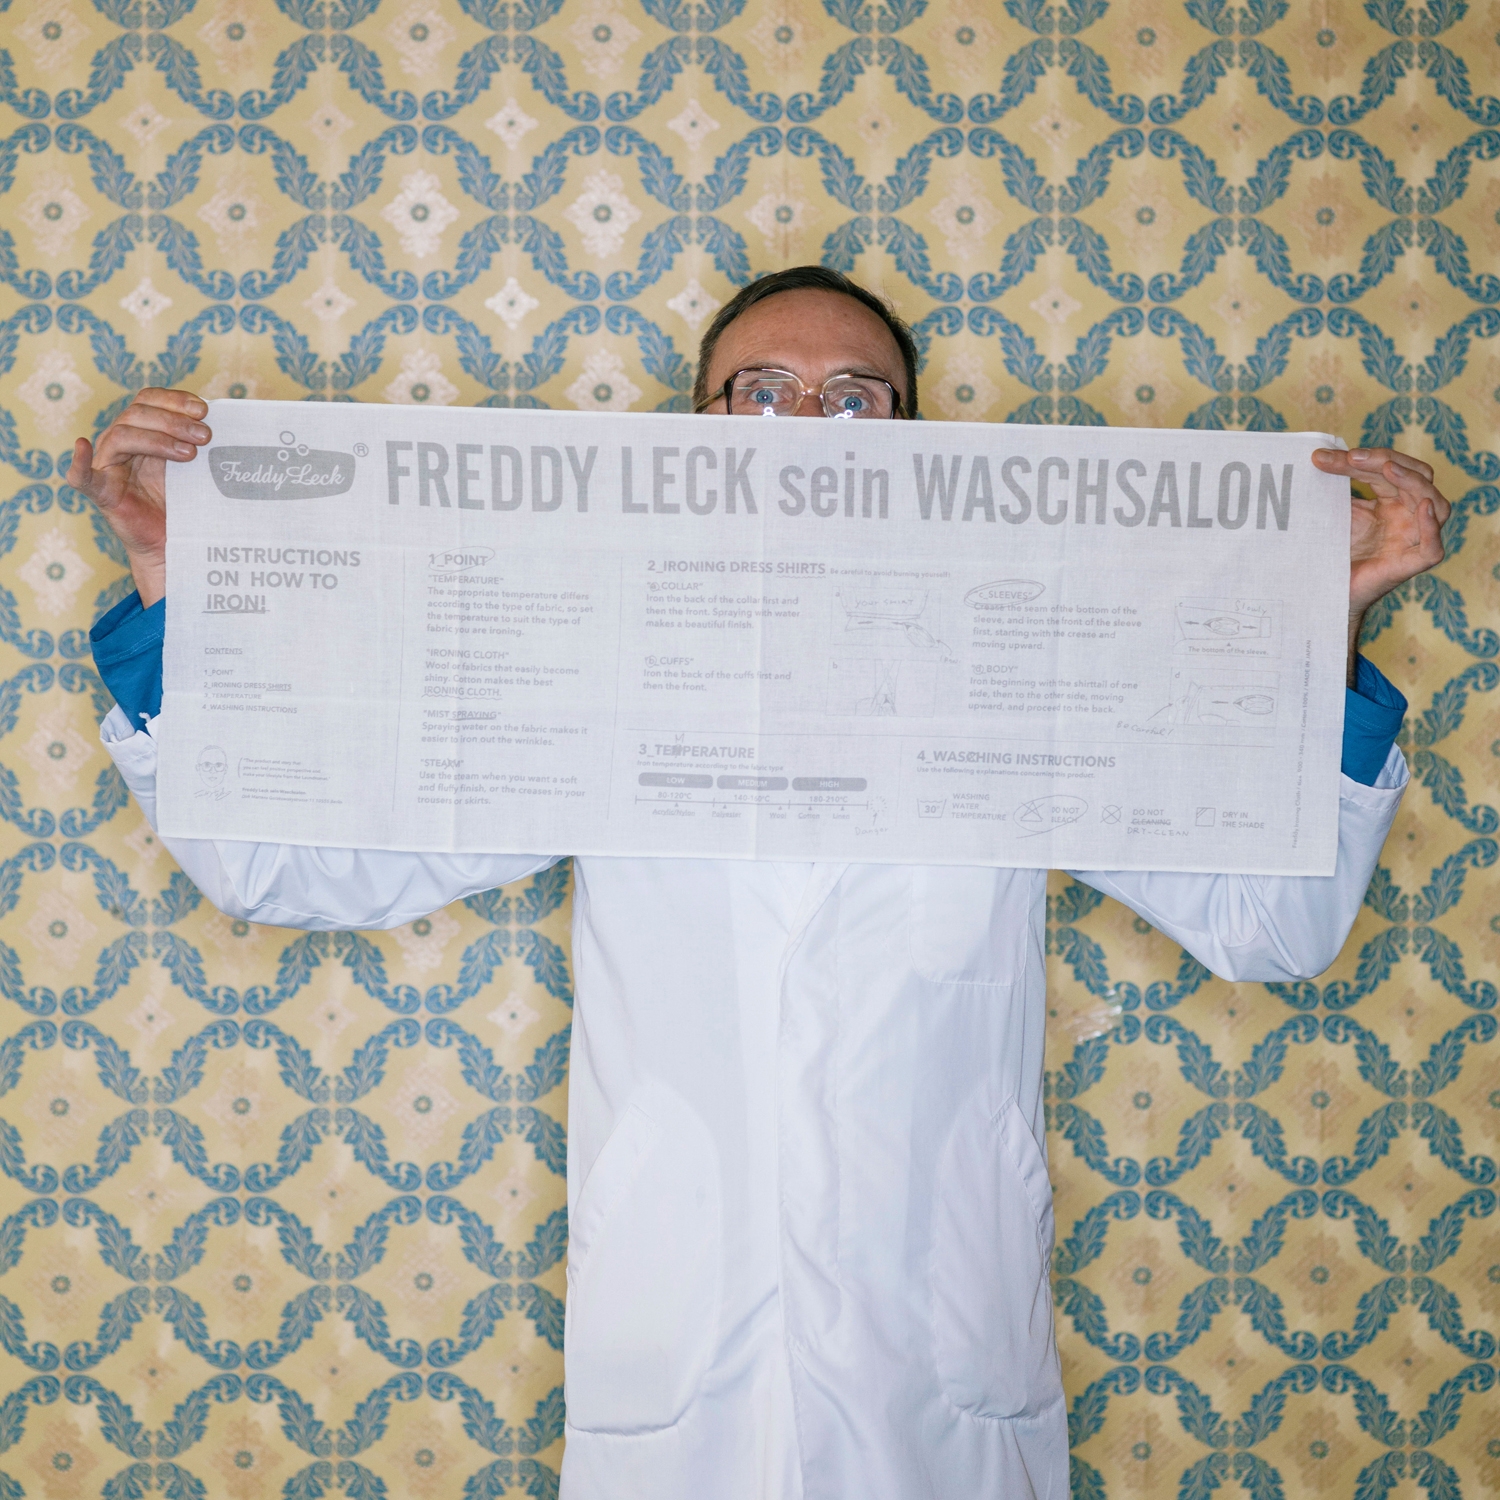 Freddy Leck sein Wasch salon/アイロンクロス